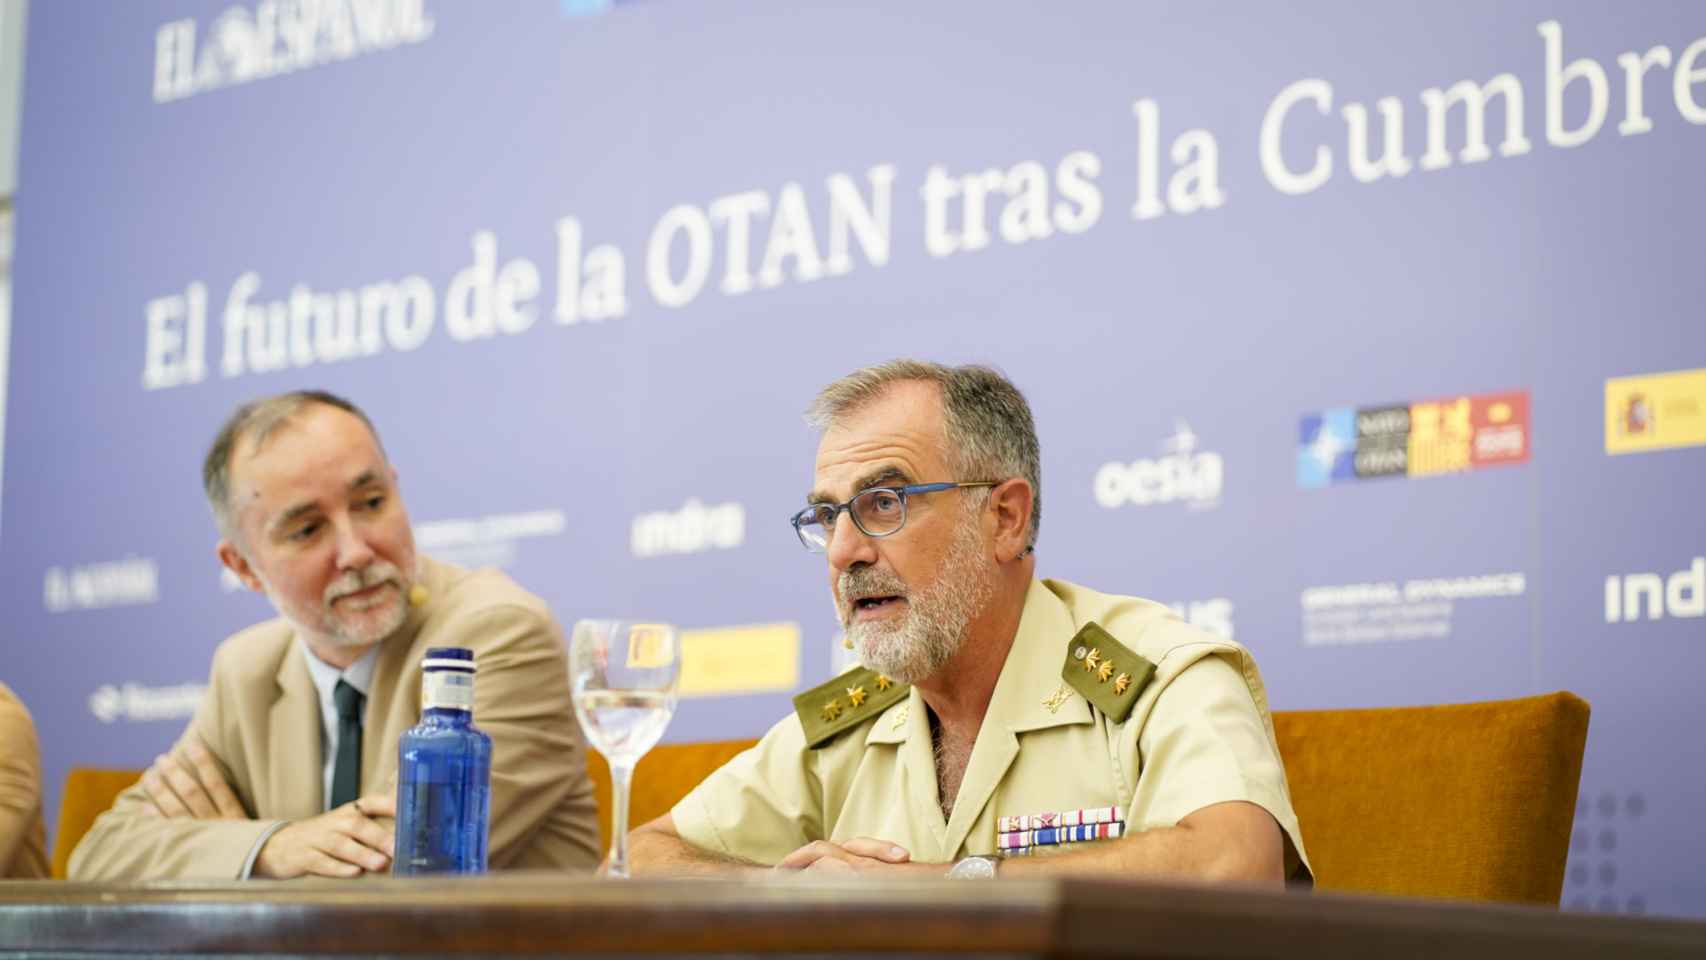 El coronel Javier Ruiz Arévalo. A la izquierda, el moderador de la mesa, Cristian Campos.